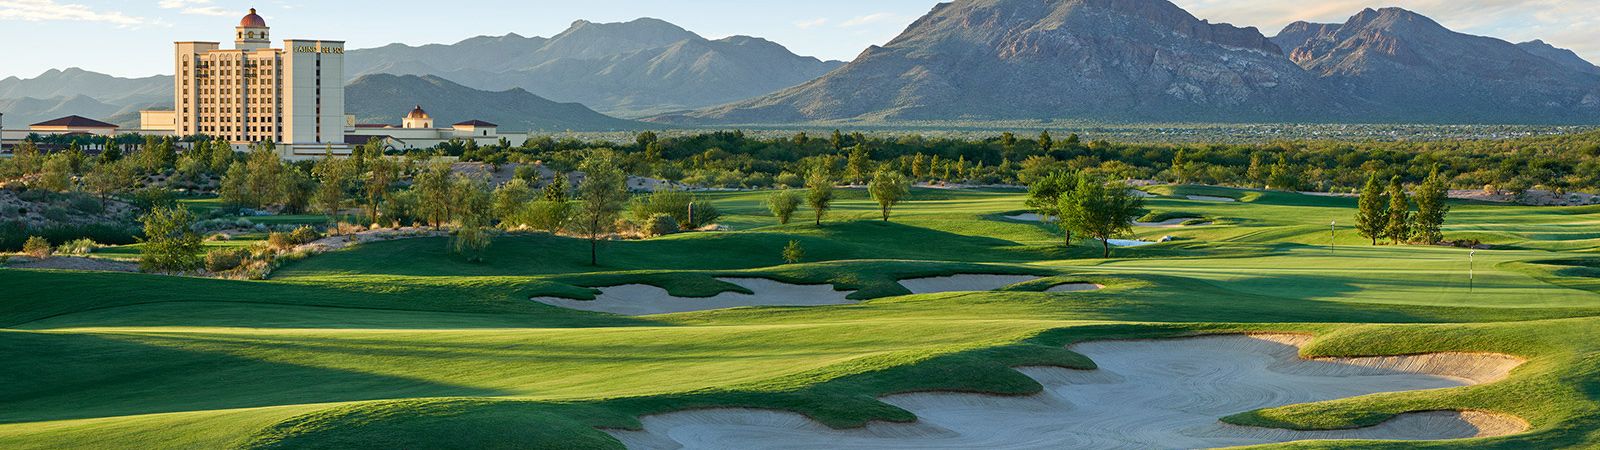 Tucson Golf Club Details